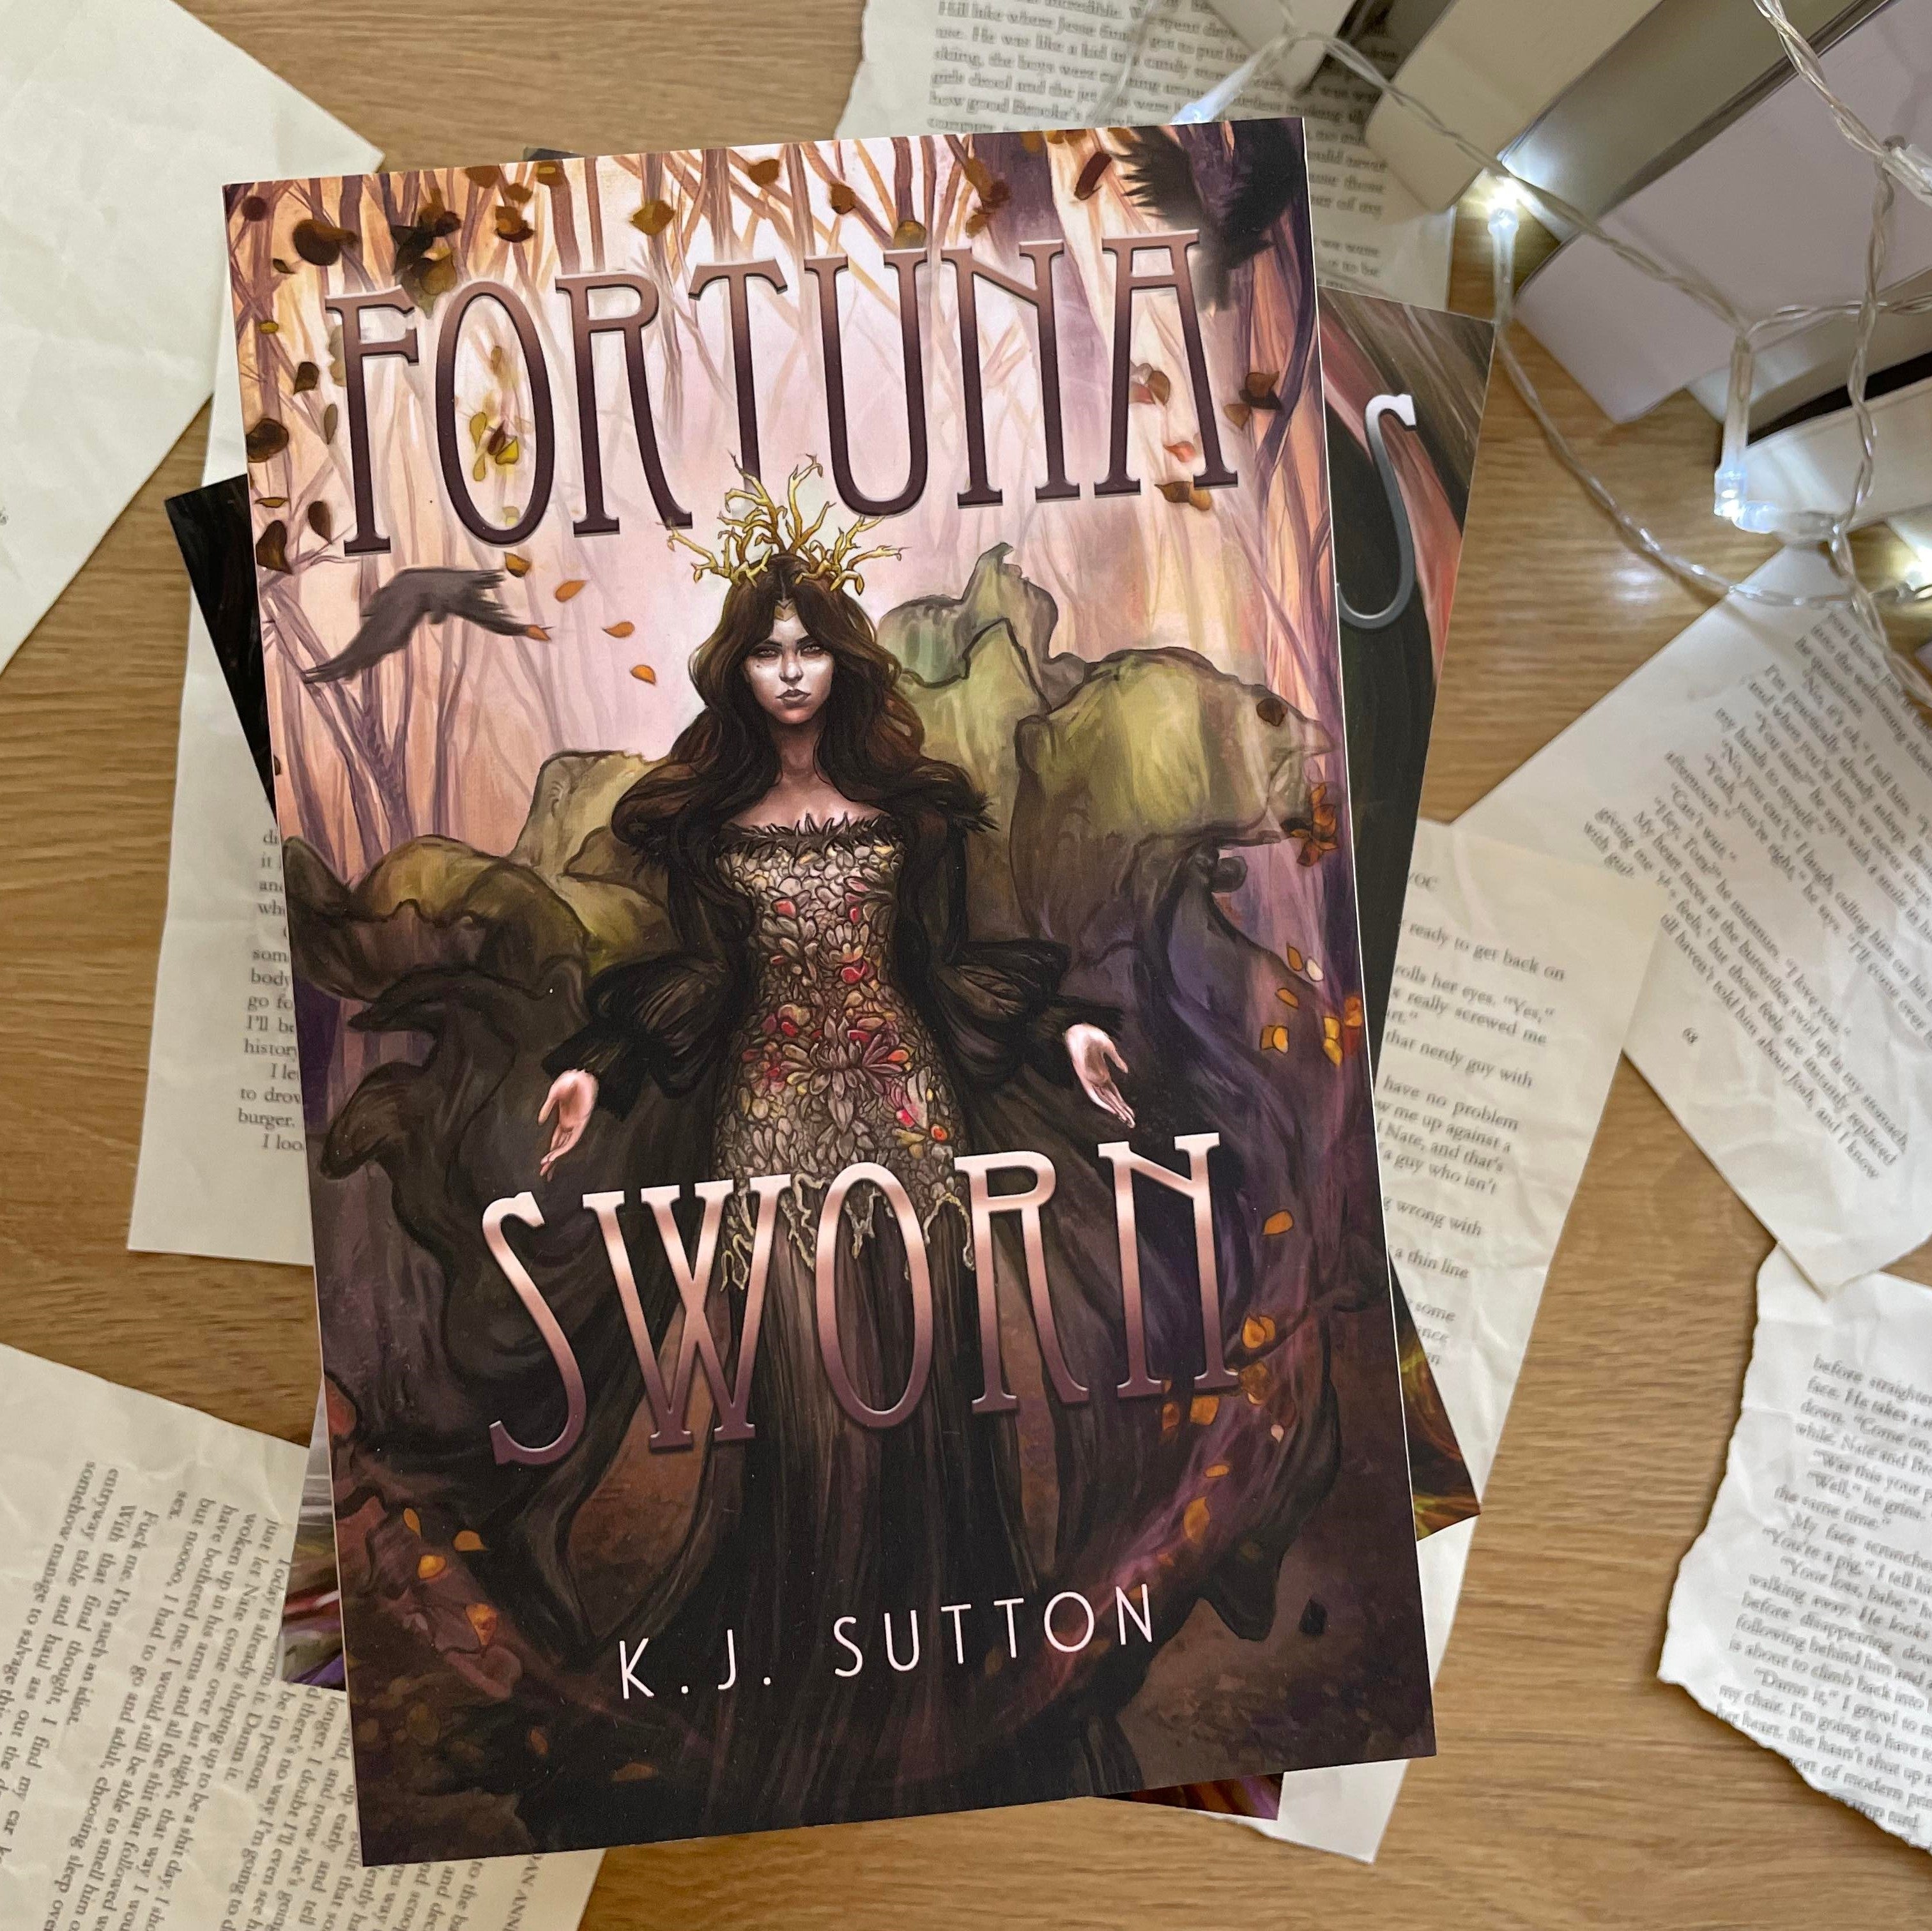 Fortuna Sworn by K. J. Sutton